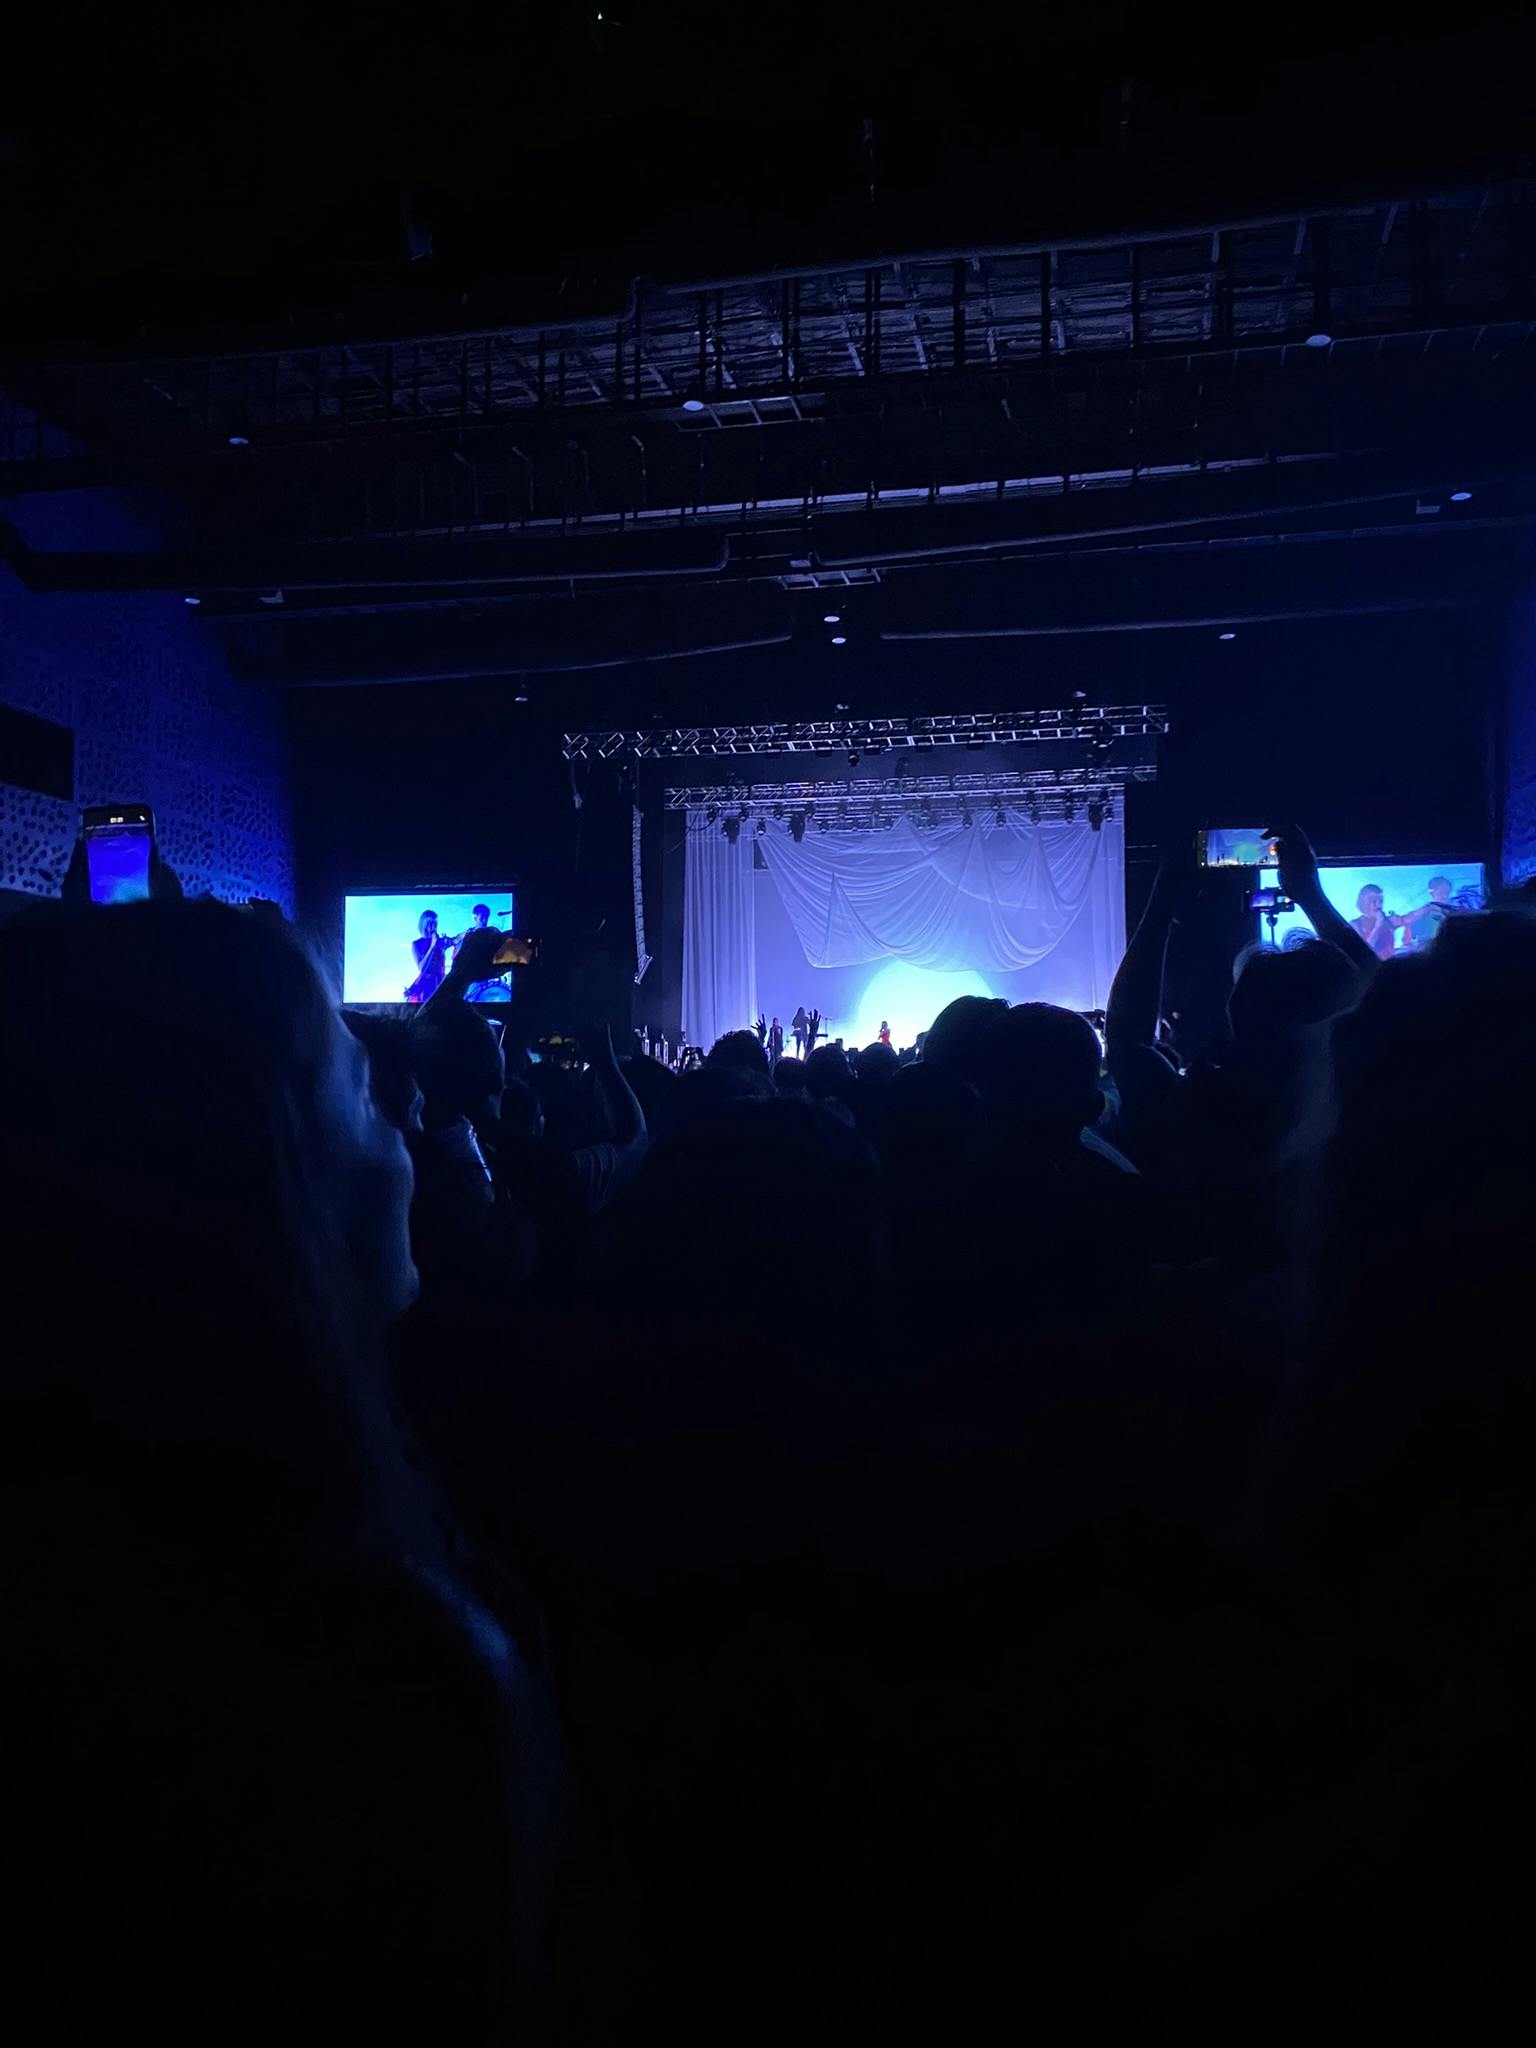 Fotografía del escenario en un concierto de Aurora tomada desde el público.